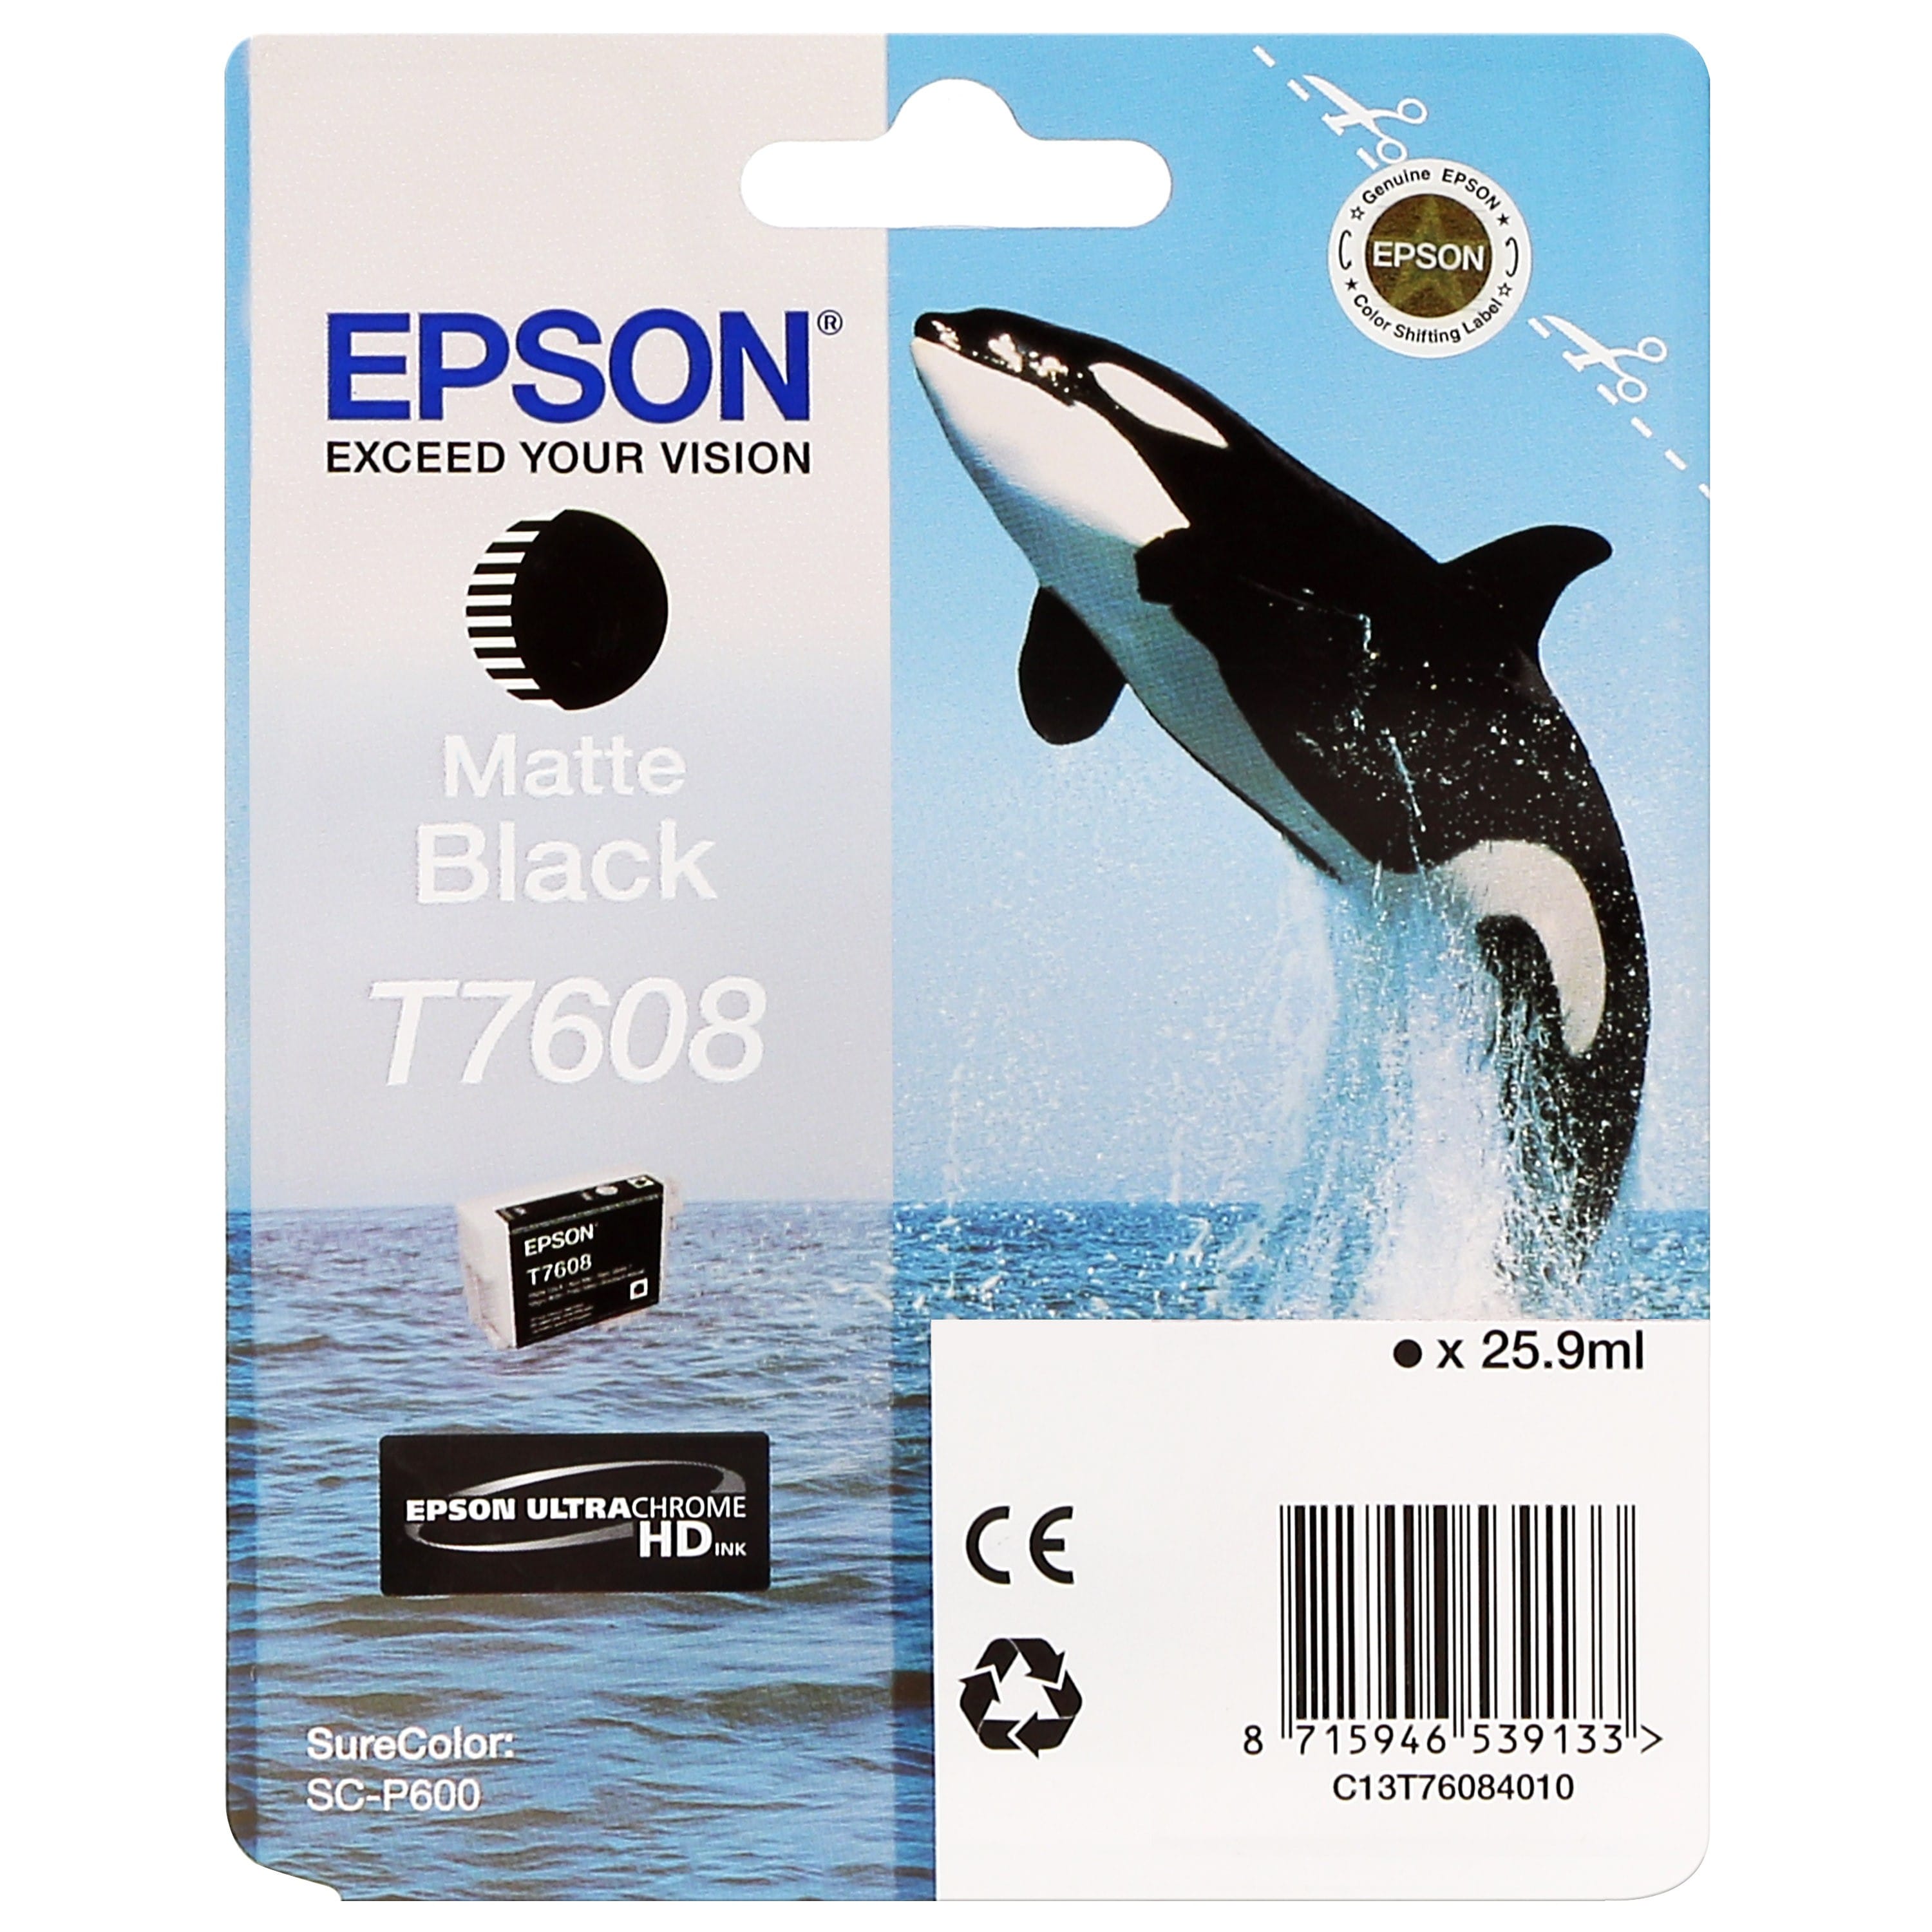 EPSON - Cartouche d'encre traceur SC-P600 - Noir Mat - 25,9ml - T7608